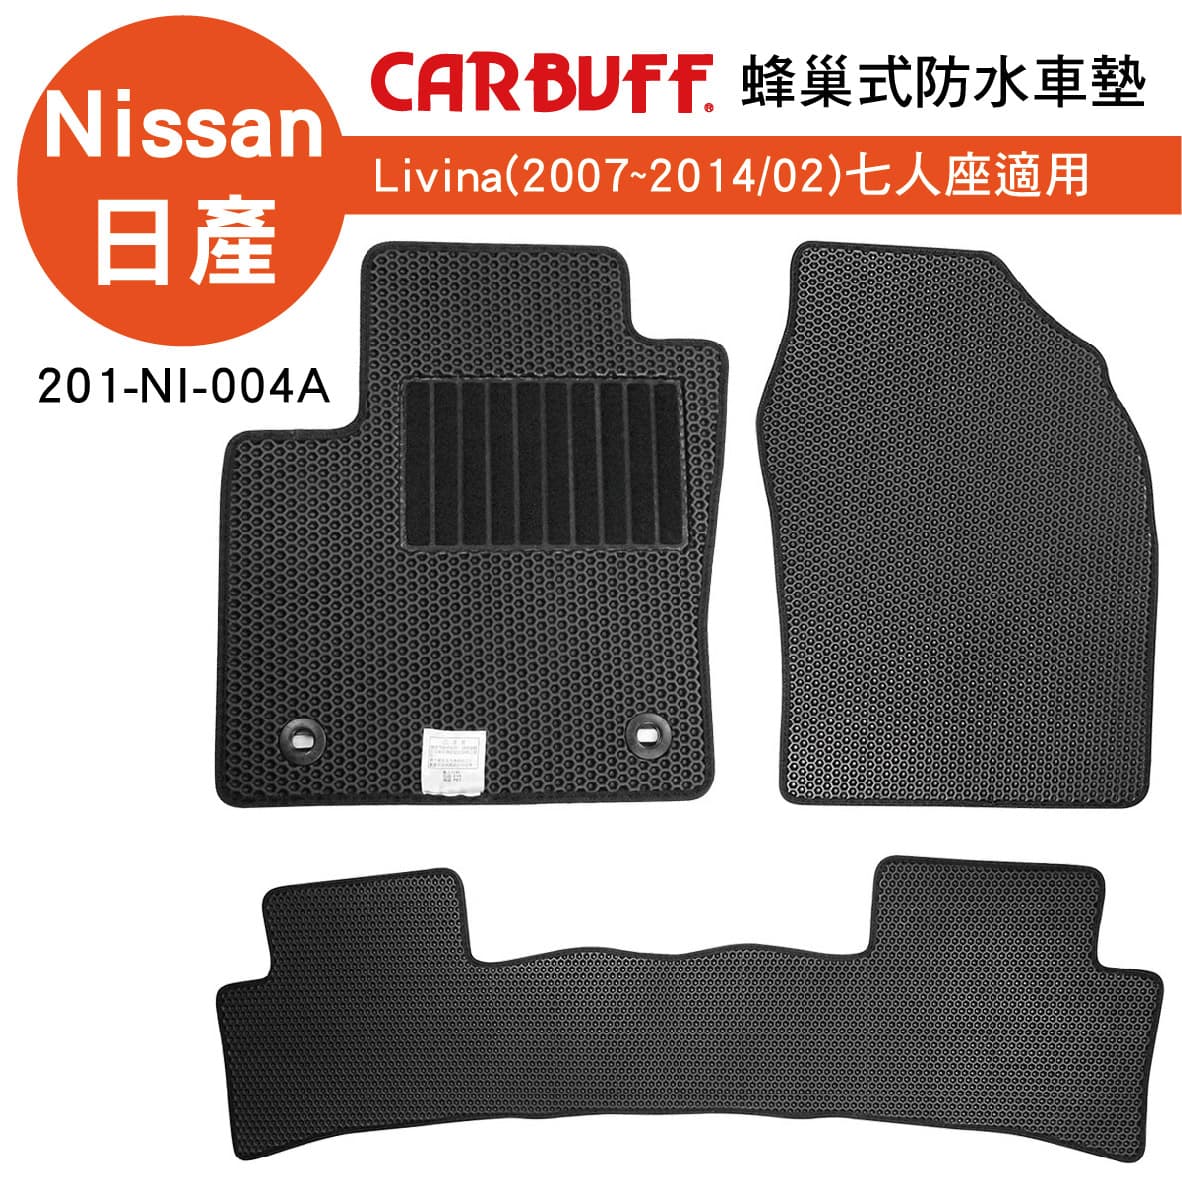 真便宜 [預購]CARBUFF 蜂巢式防水車墊 Nissan LIVINA(2007~2014/02)七人座